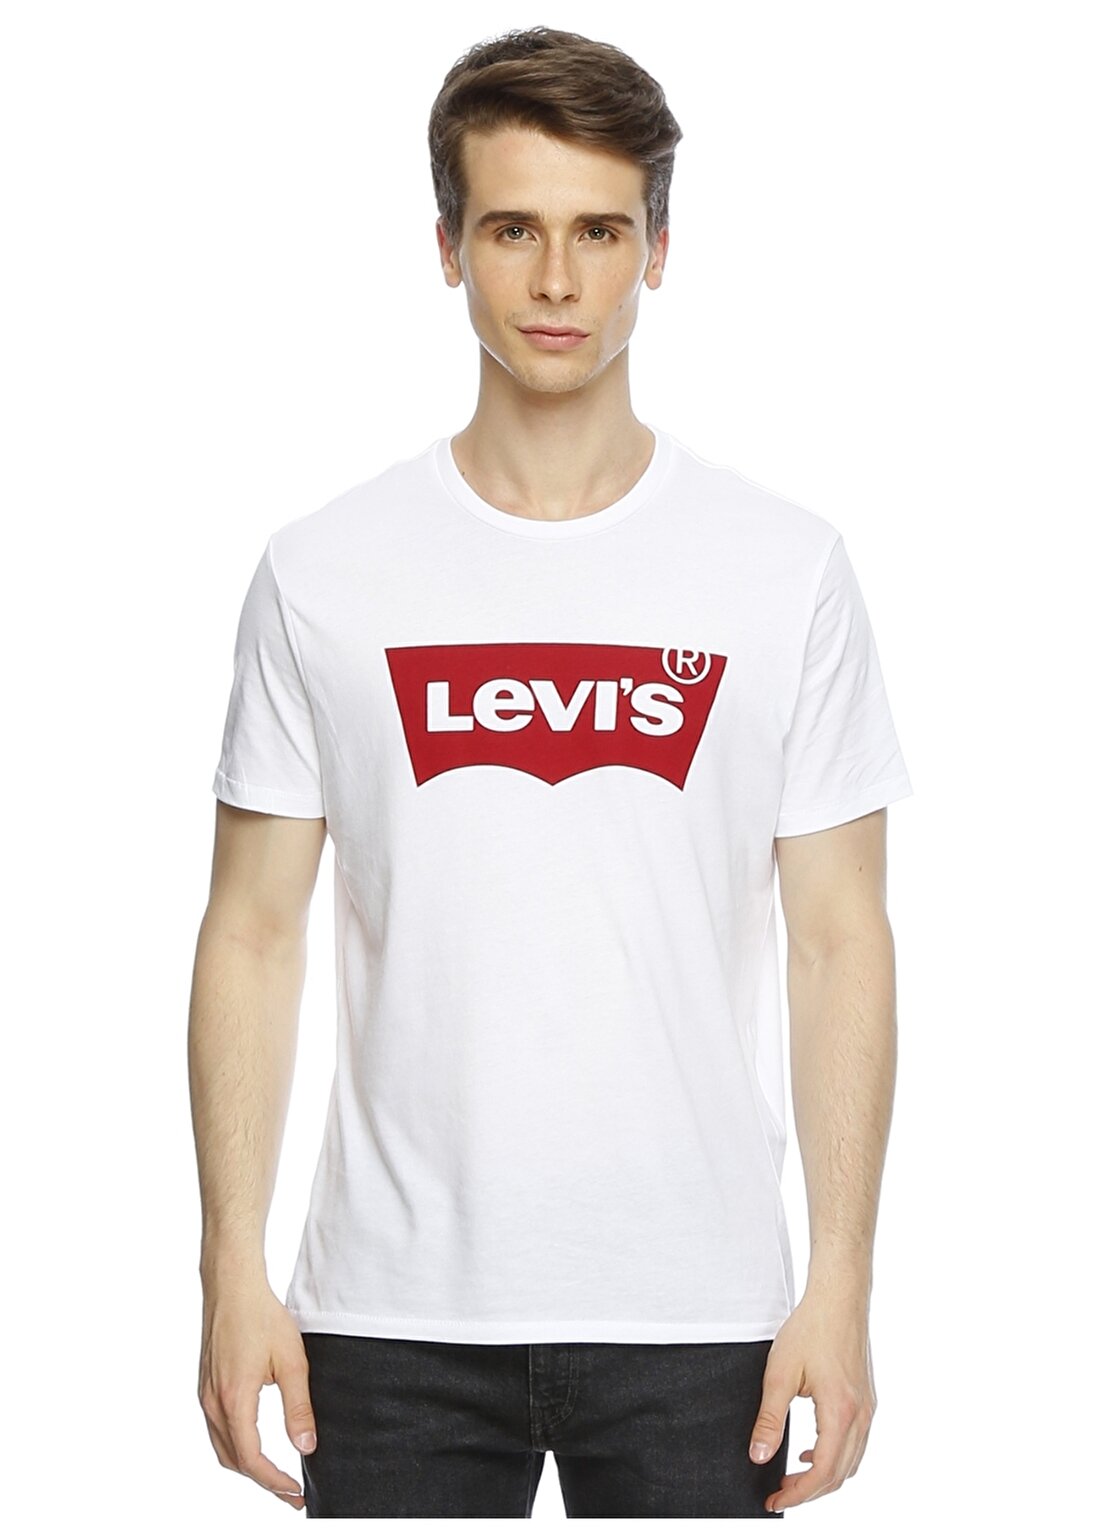 Levis 17783-0140 Graphic Setin Neck T-Shirt